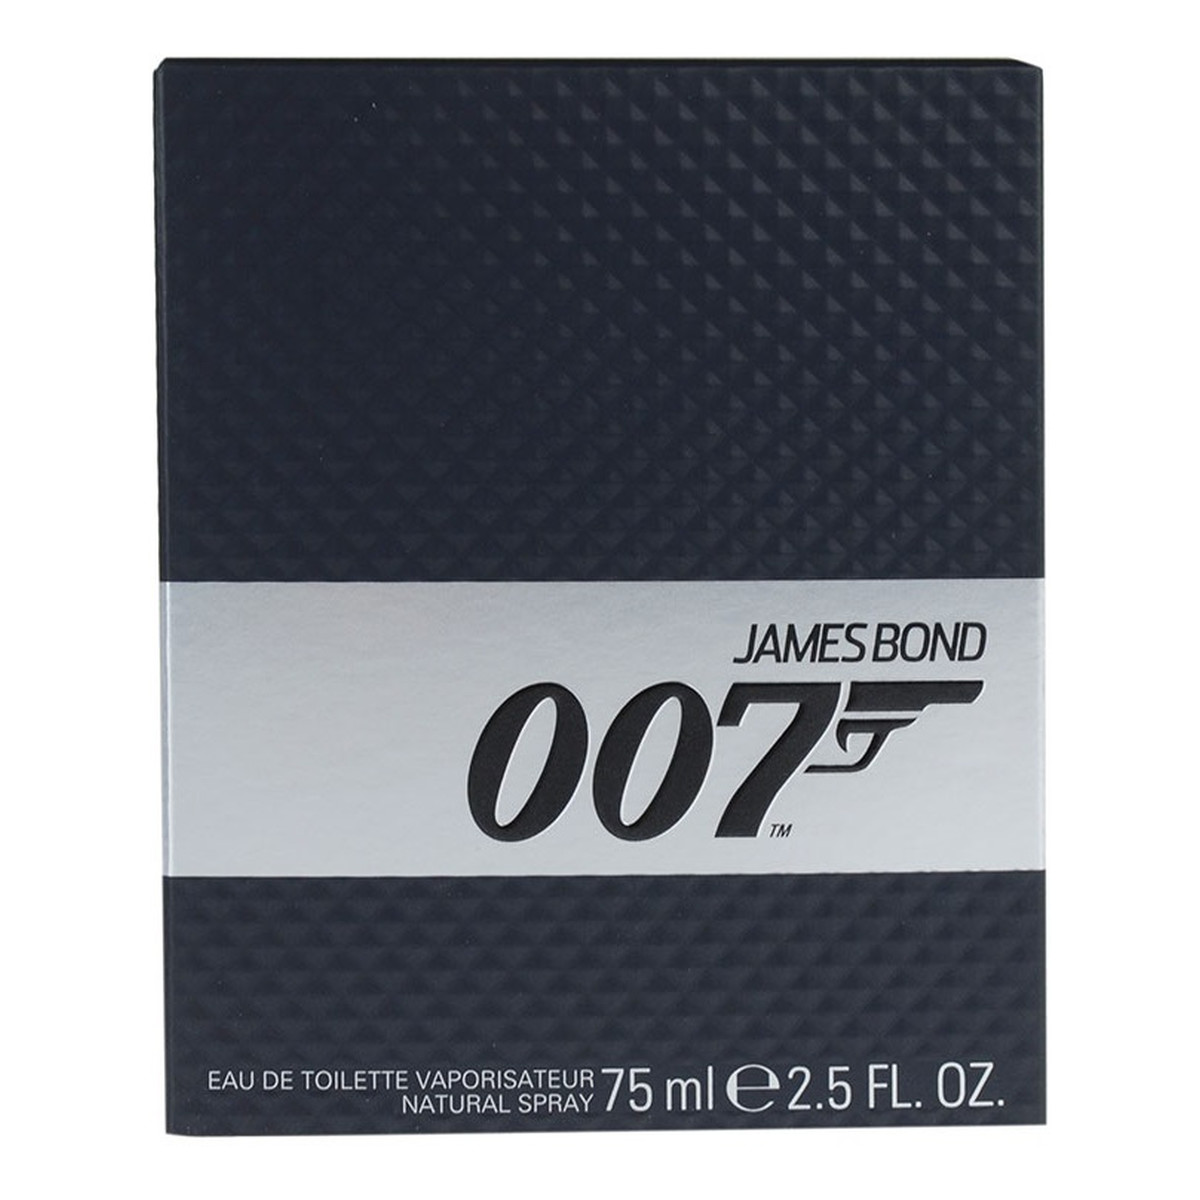 James Bond 007 Limited Edition woda toaletowa dla mężczyzn 75ml